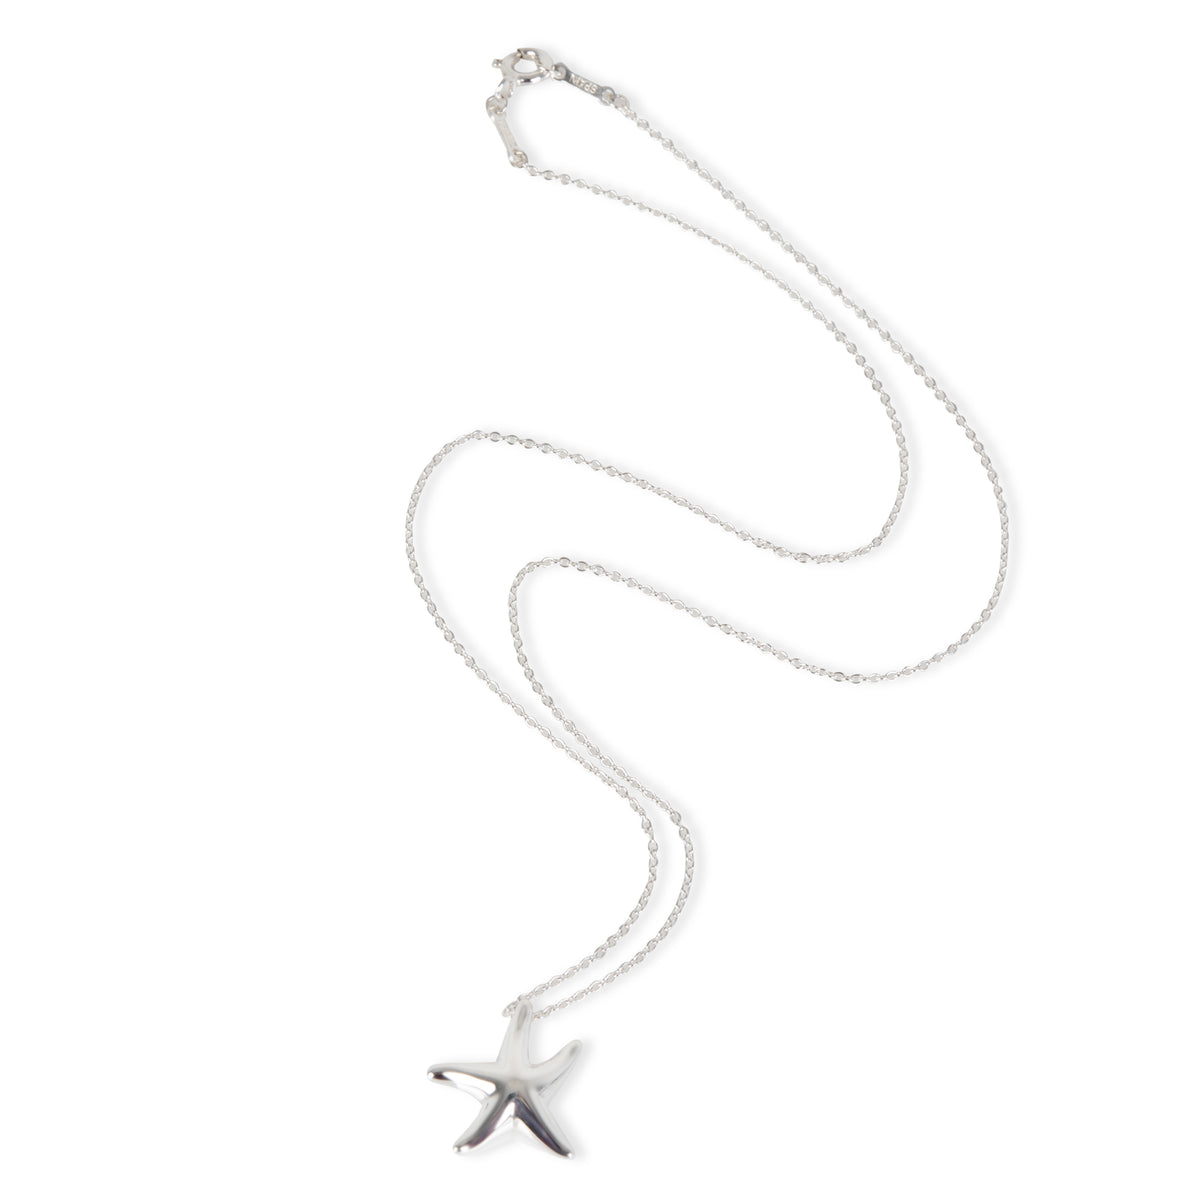 Tiffany & Co. Elsa Peretti Starfish Necklace in  Sterling Silver